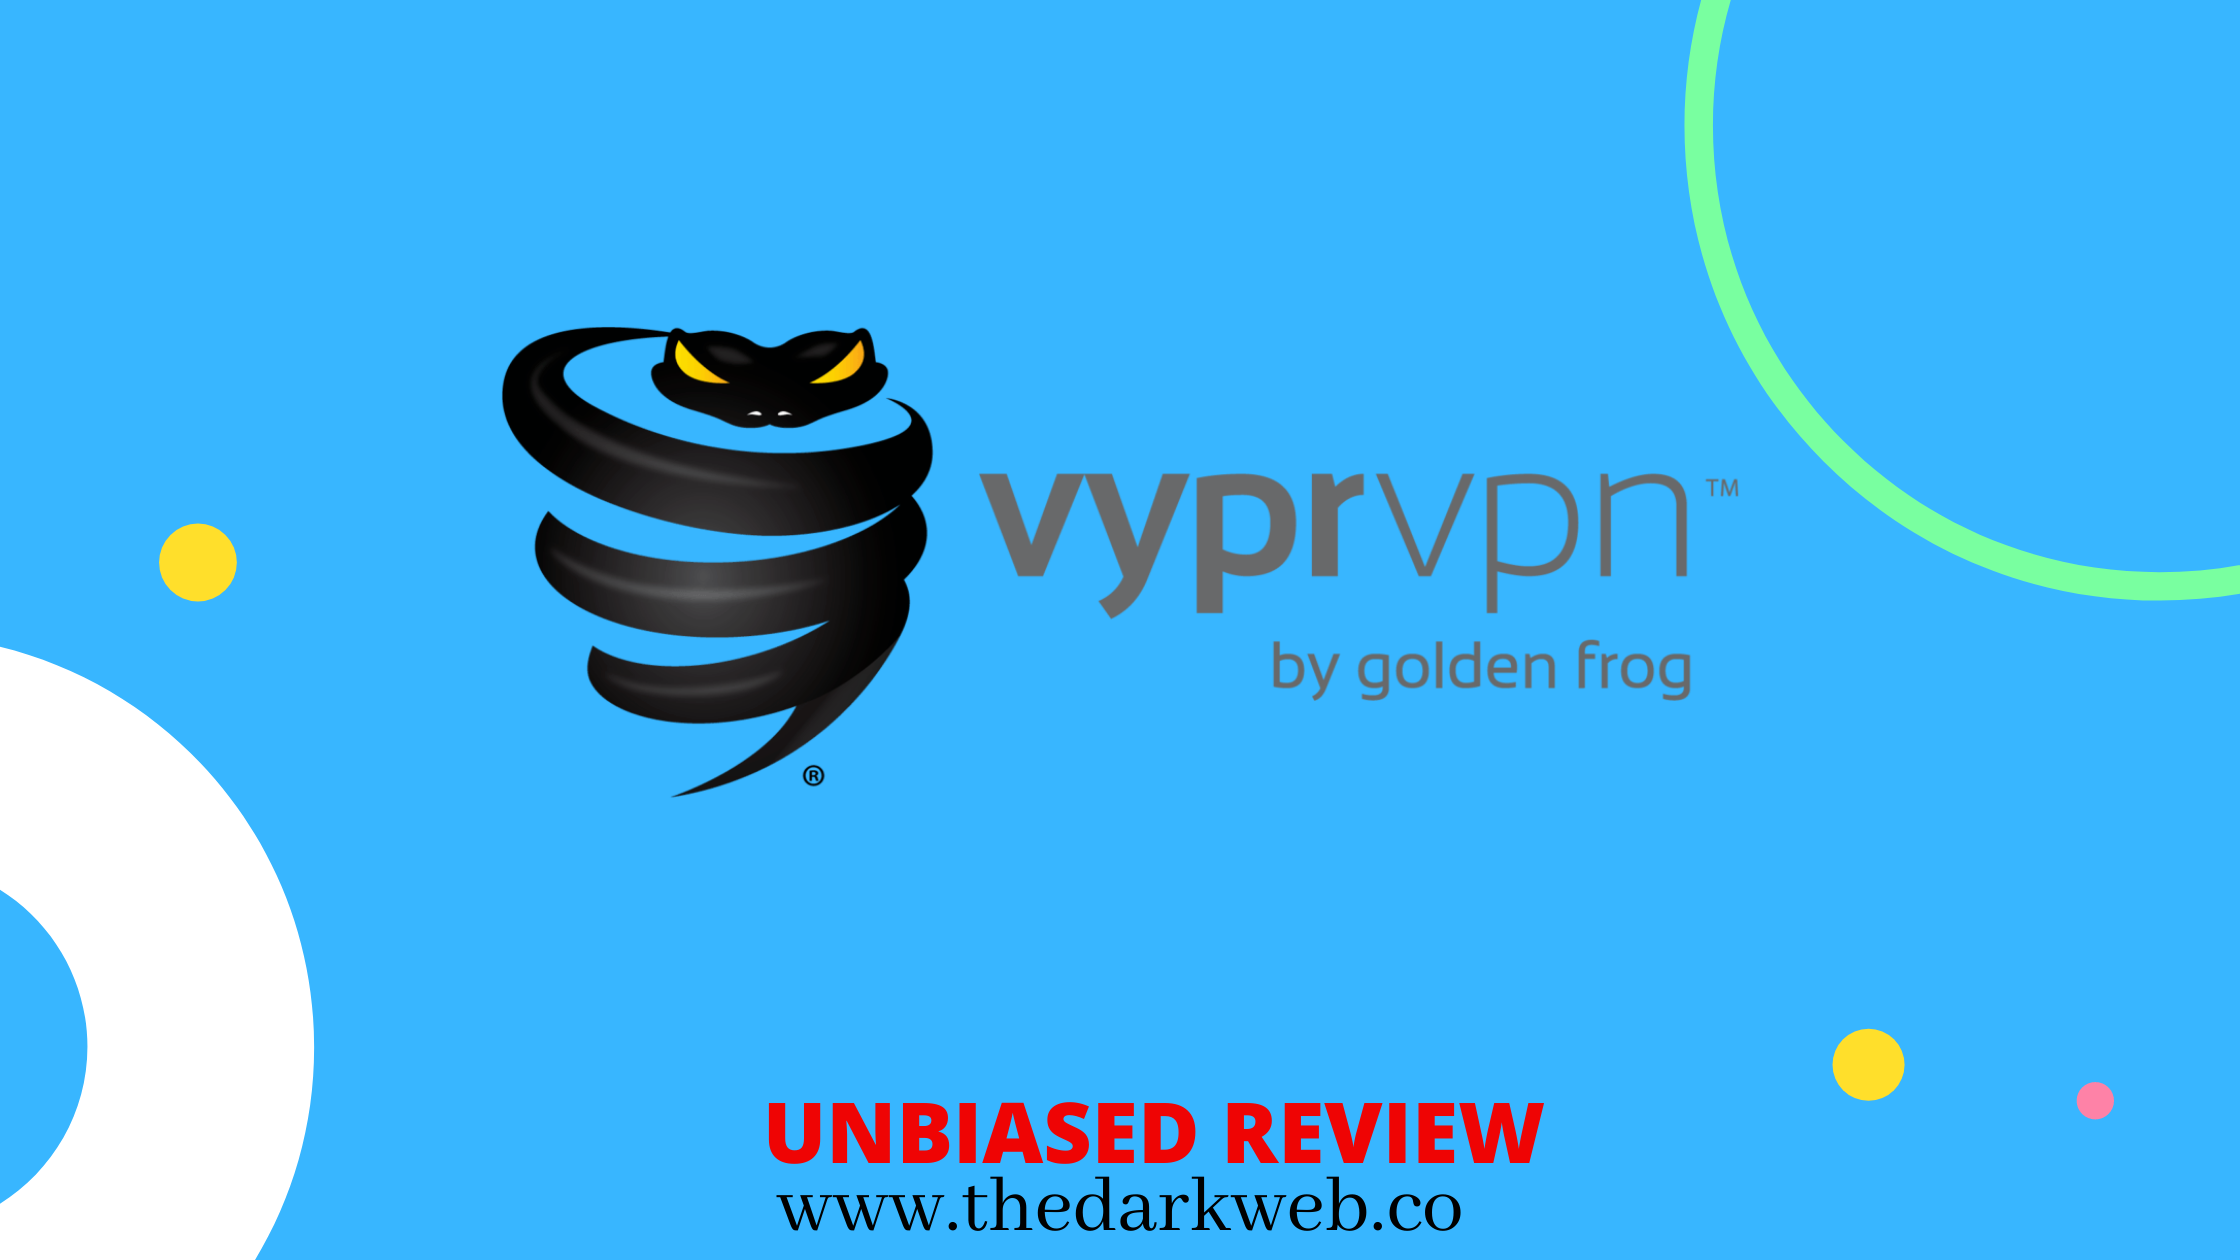 golden frog vyprvpn review